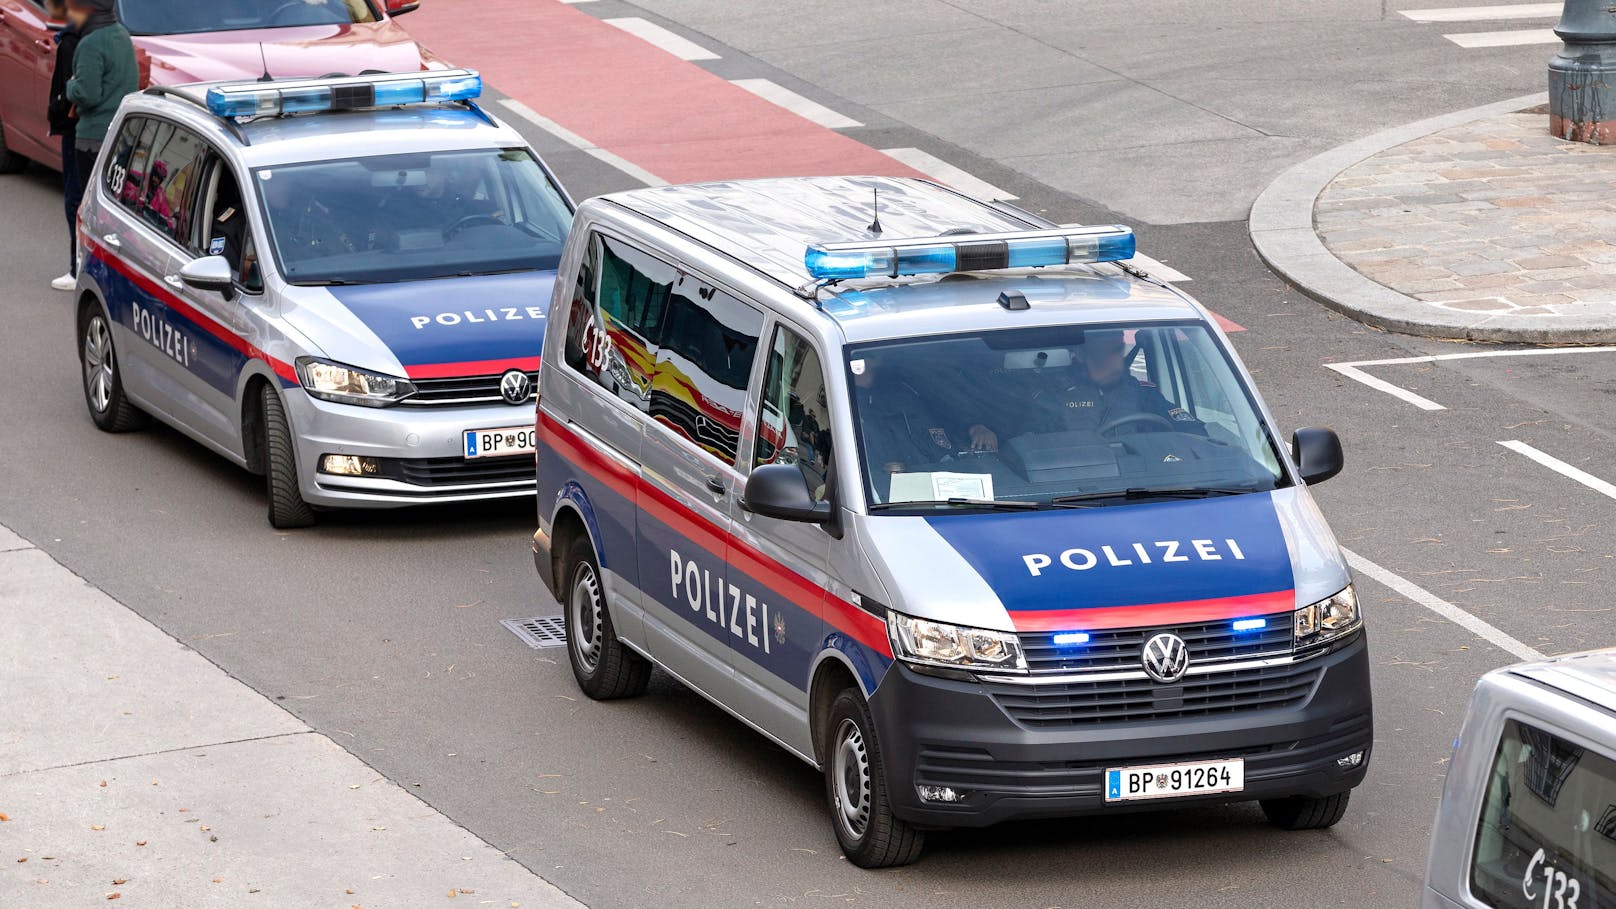 Frau (29) geht in Wien mit Messer auf Polizisten los